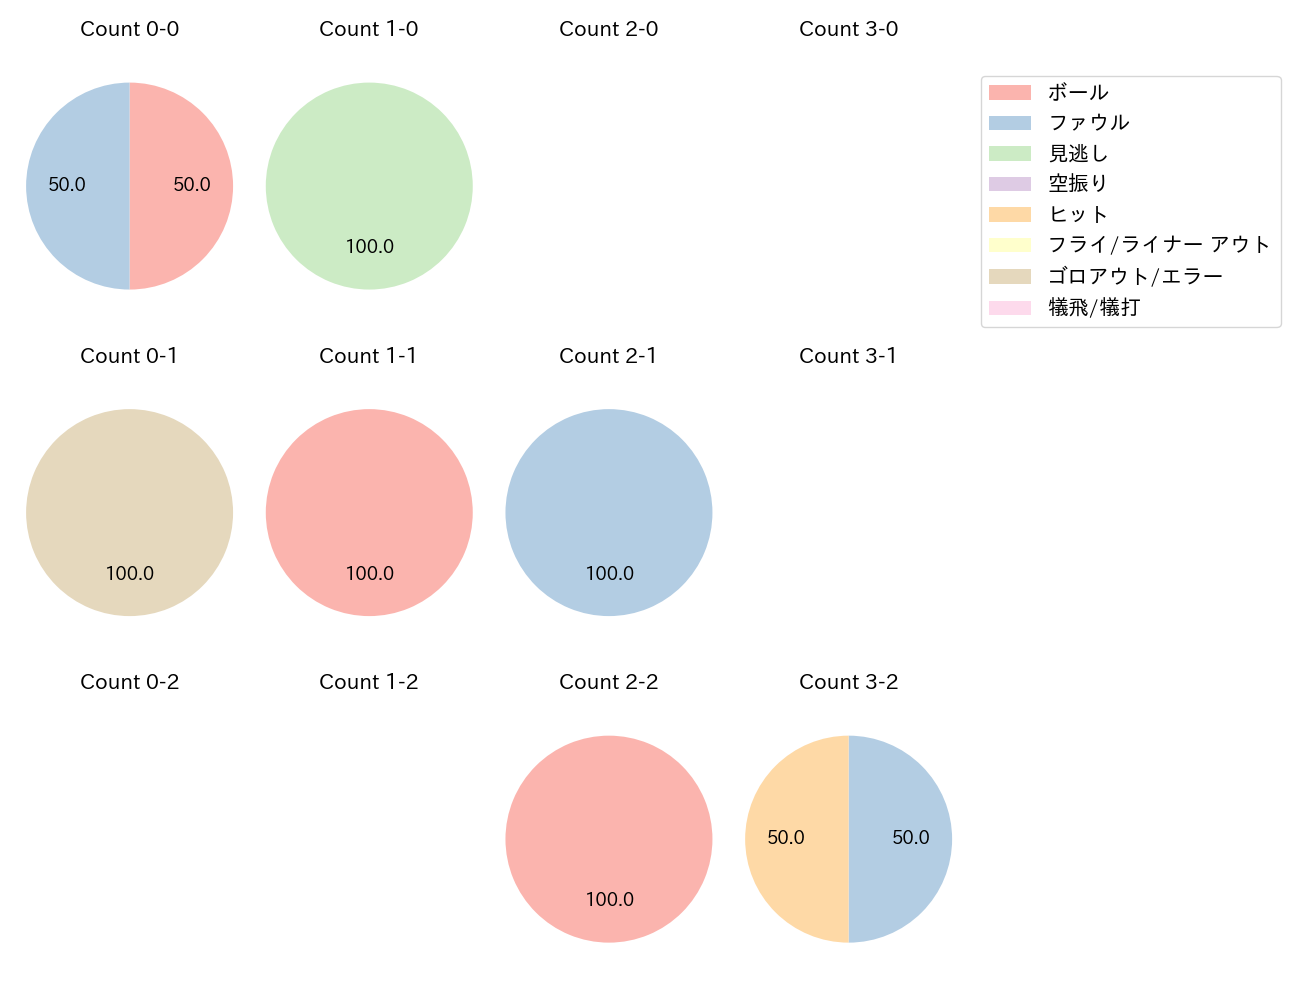 石川 柊太の球数分布(2021年レギュラーシーズン全試合)